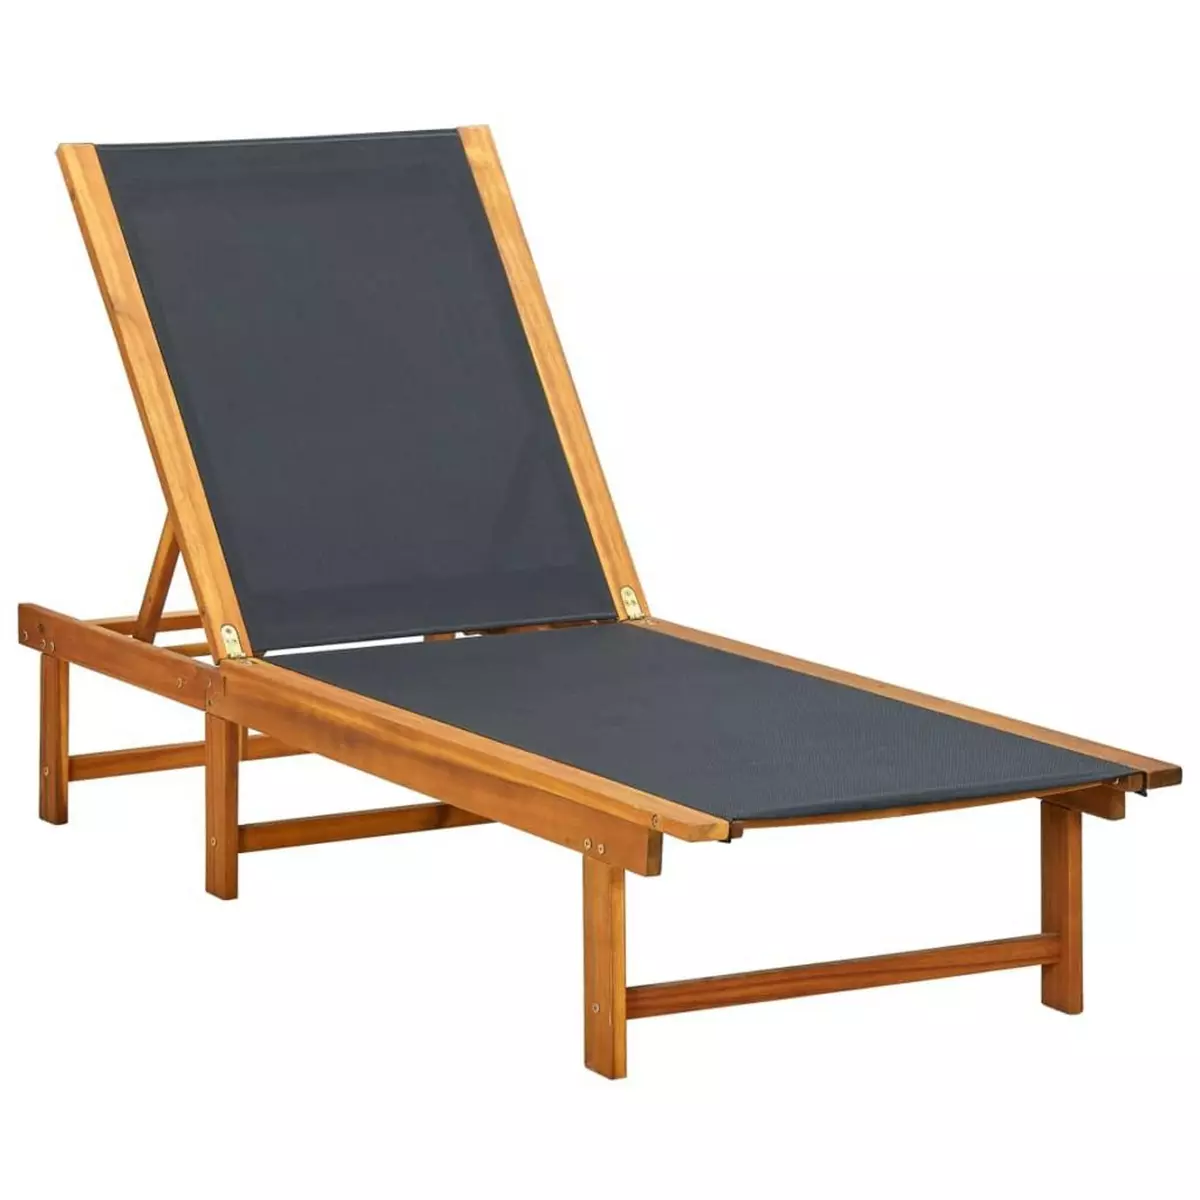 VIDAXL Chaise longue Bois d'acacia solide et textilene